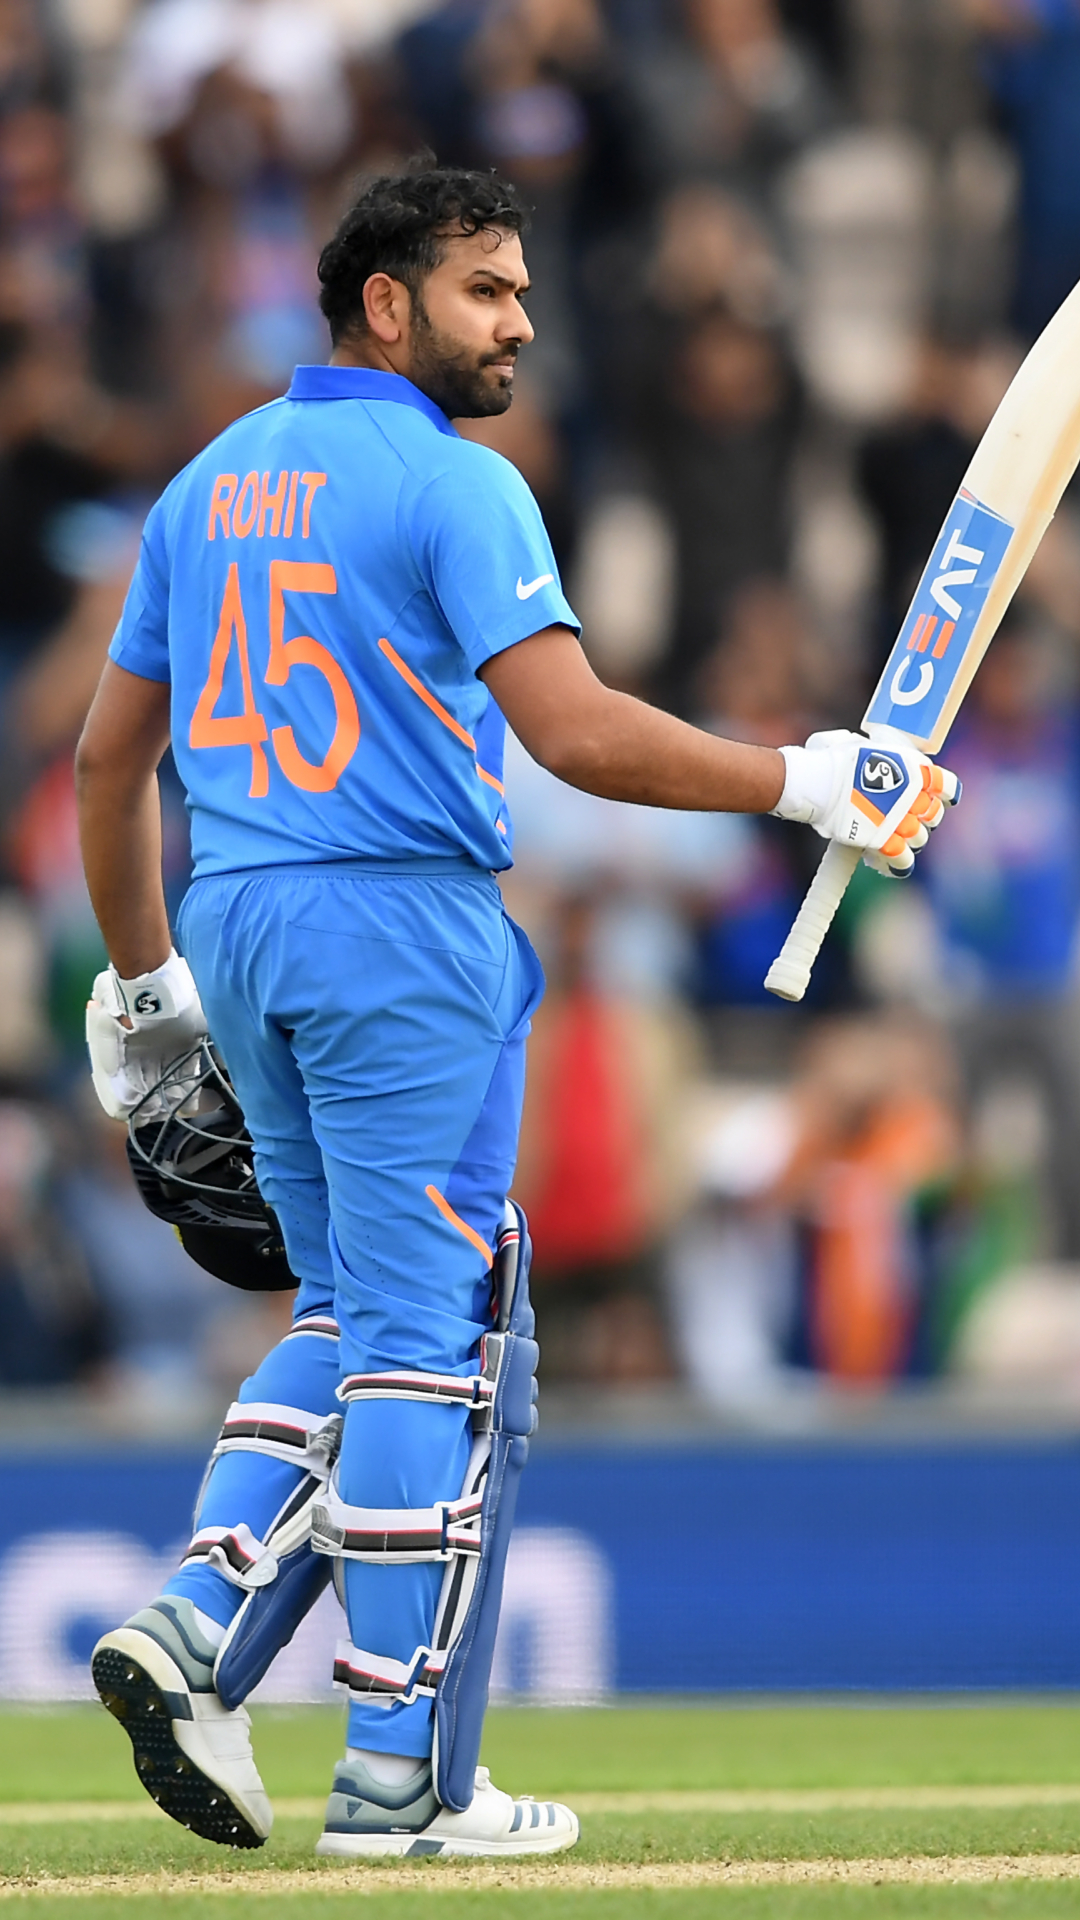 ODI वर्ल्ड कप में भारत के लिए सबसे बड़ी पारी खेलने वाले बल्लेबाजों की लिस्ट 